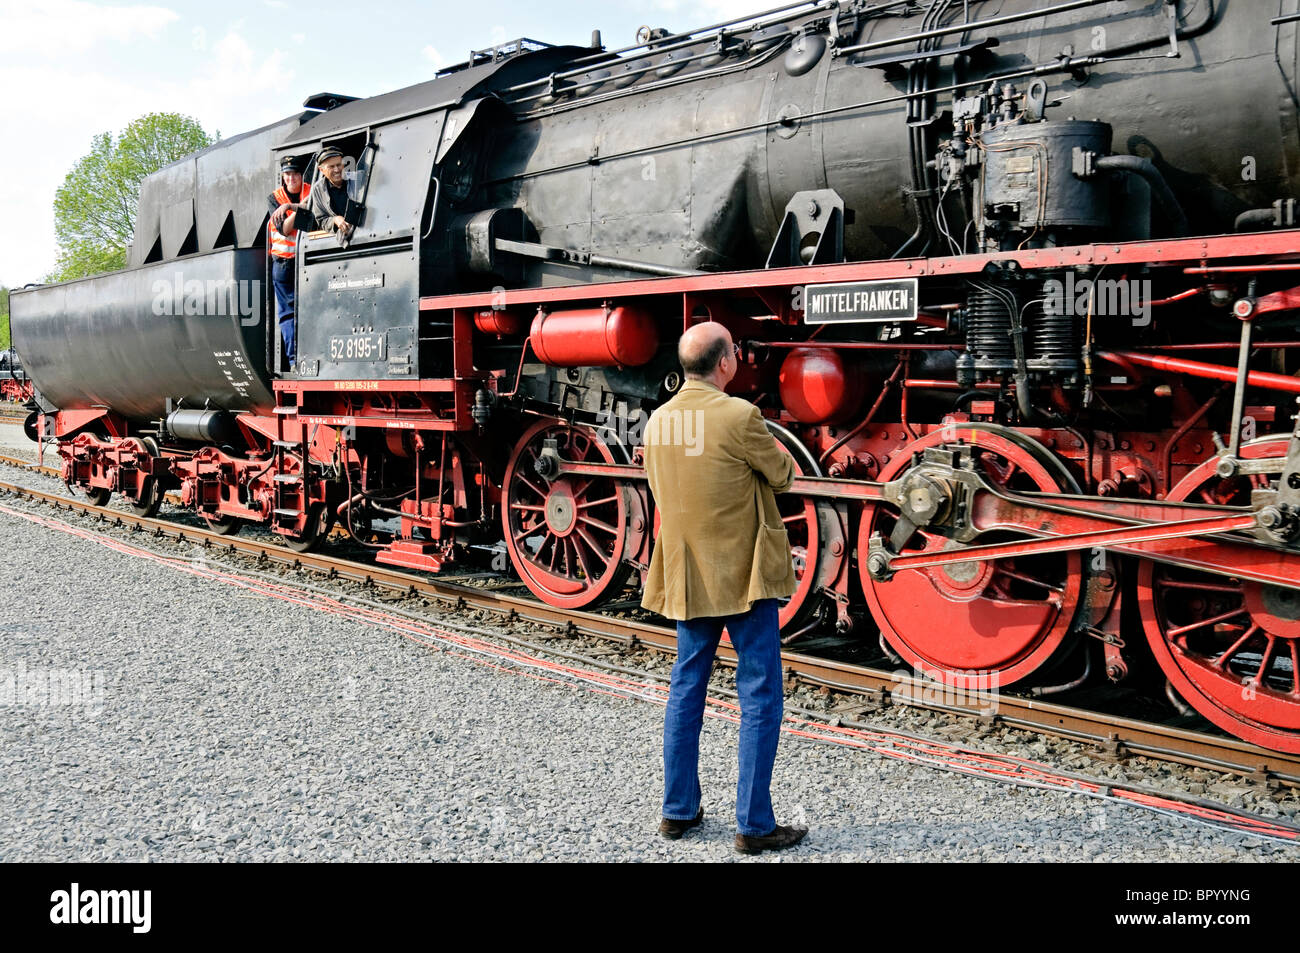 Admirer l'homme ittelfranken "locomotive" au Musée de la Locomotive à vapeur allemande, Neuenmarkt, Franconia, Bavaria, Germany. Banque D'Images